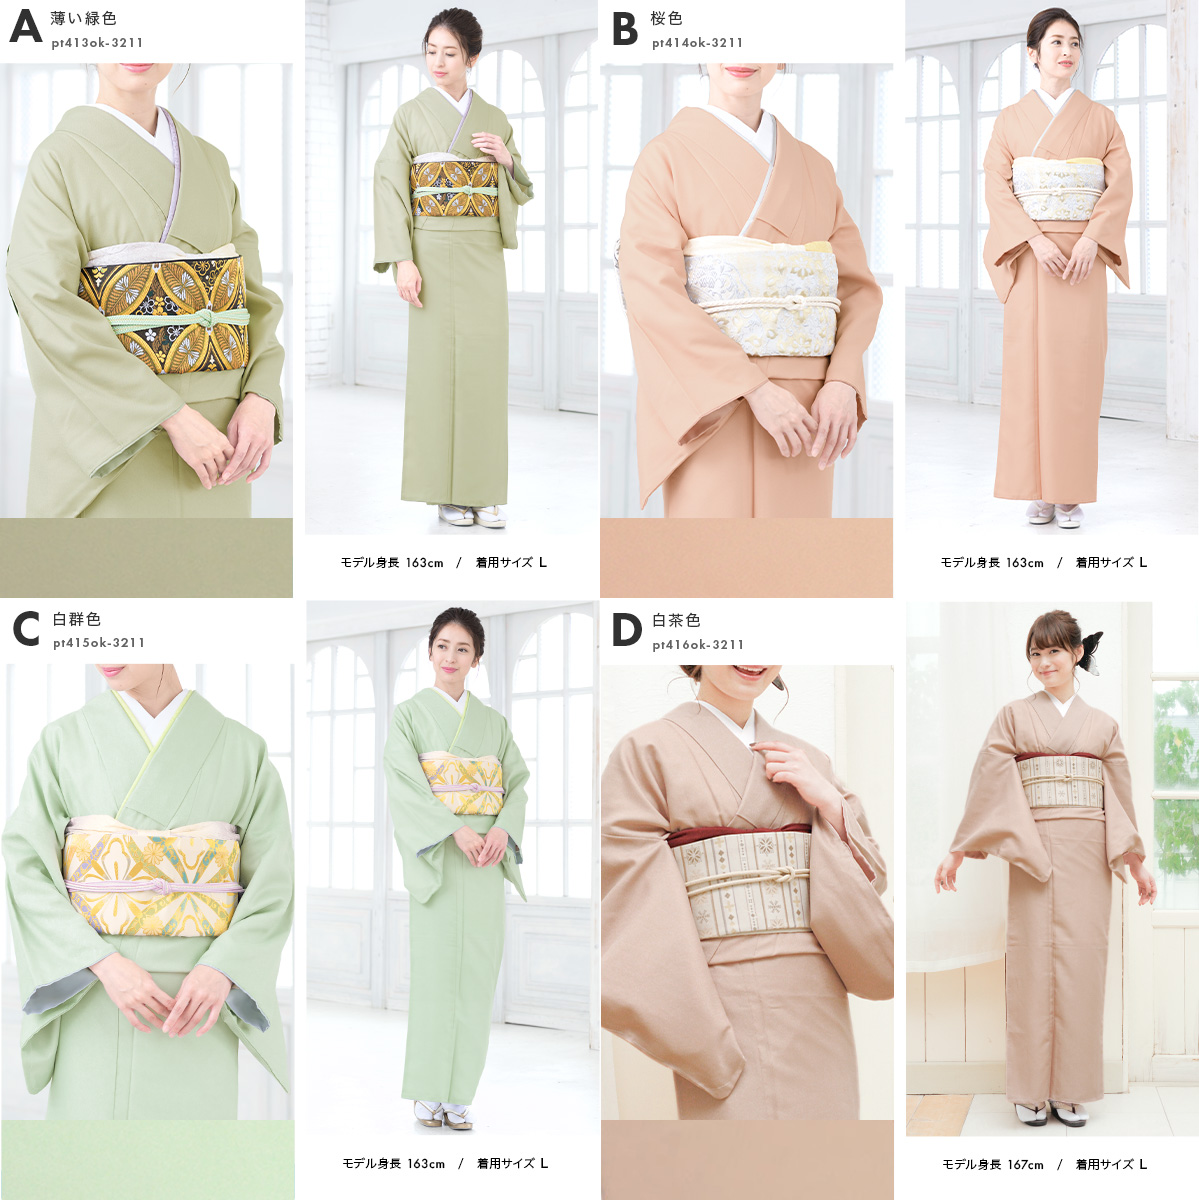 ... кимоно одиночный . однотонная ткань кимоно женщина женский pre ta кимоно совершенно новый M L одиночный товар бесплатная доставка MoP